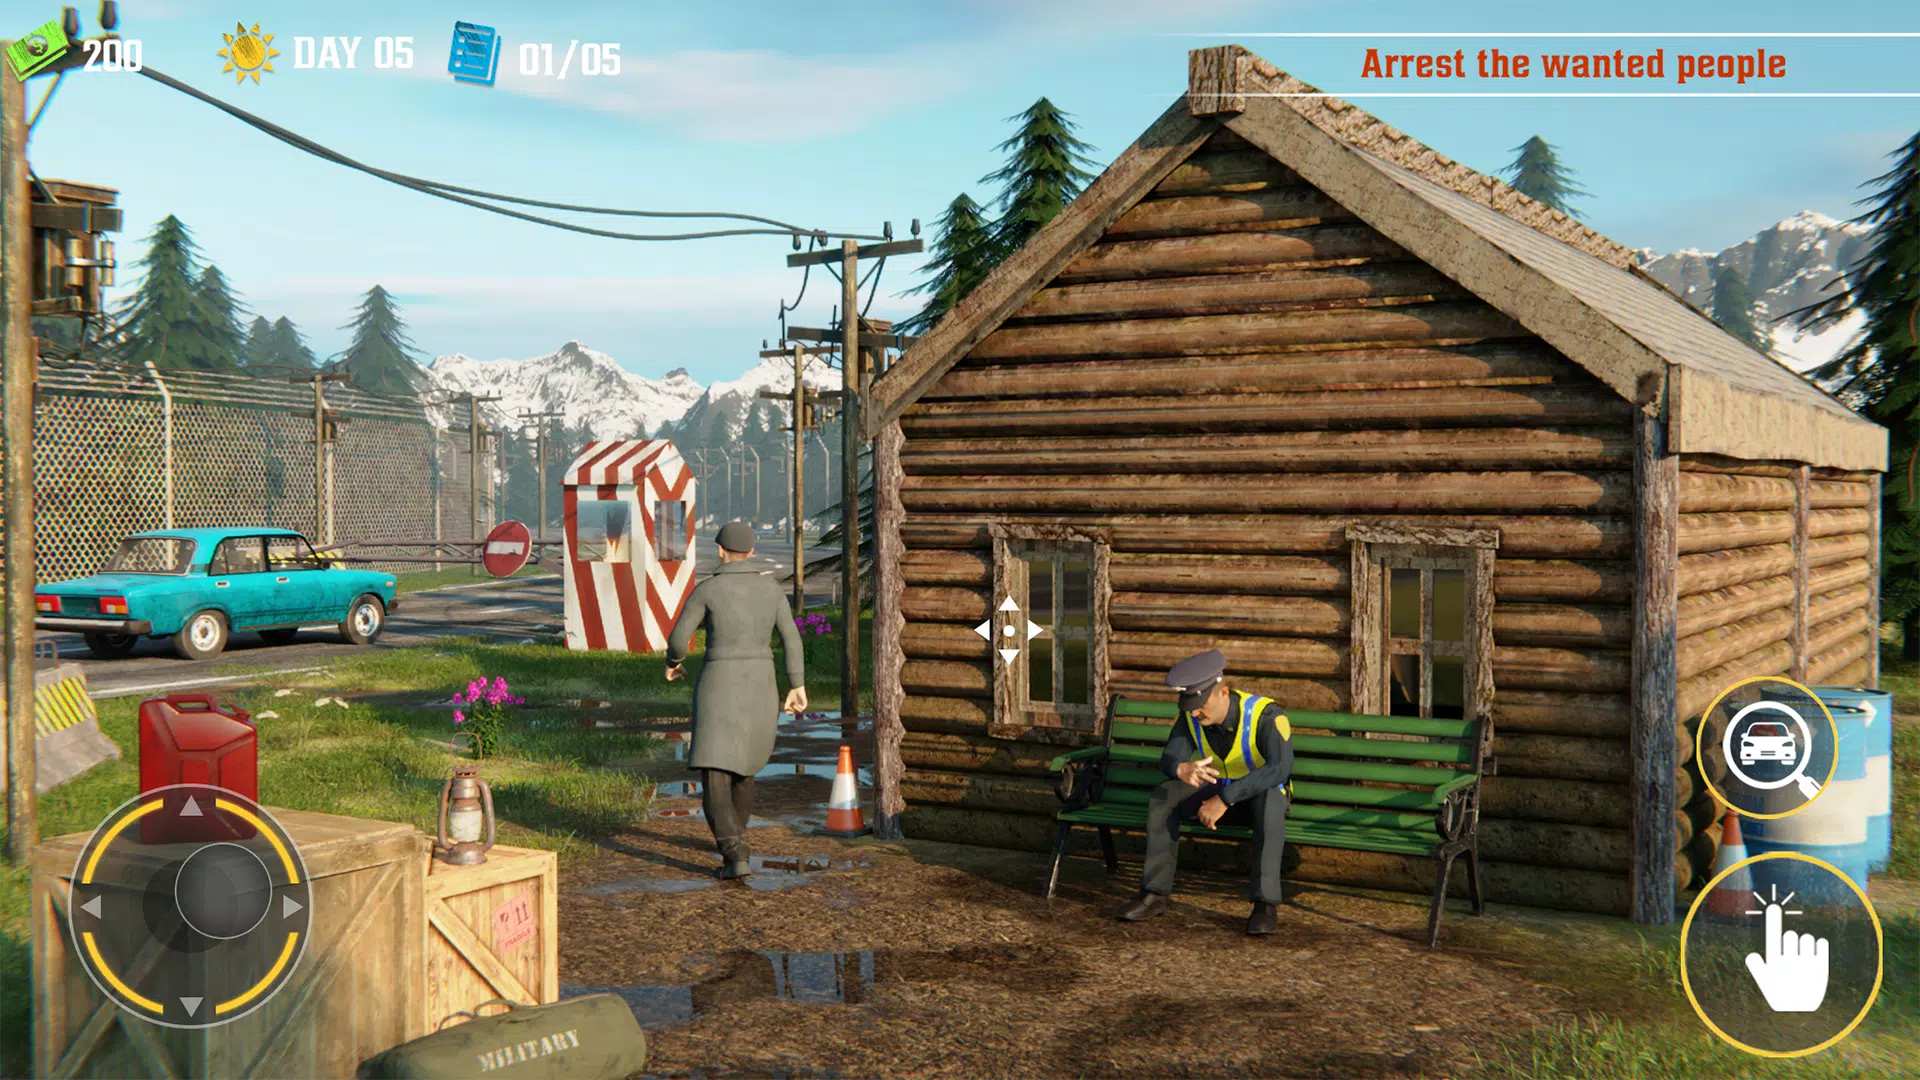 CONTRABAND POLICE - Gameplay em PT/BR no PC deste game de Patrulha da  Fronteira 